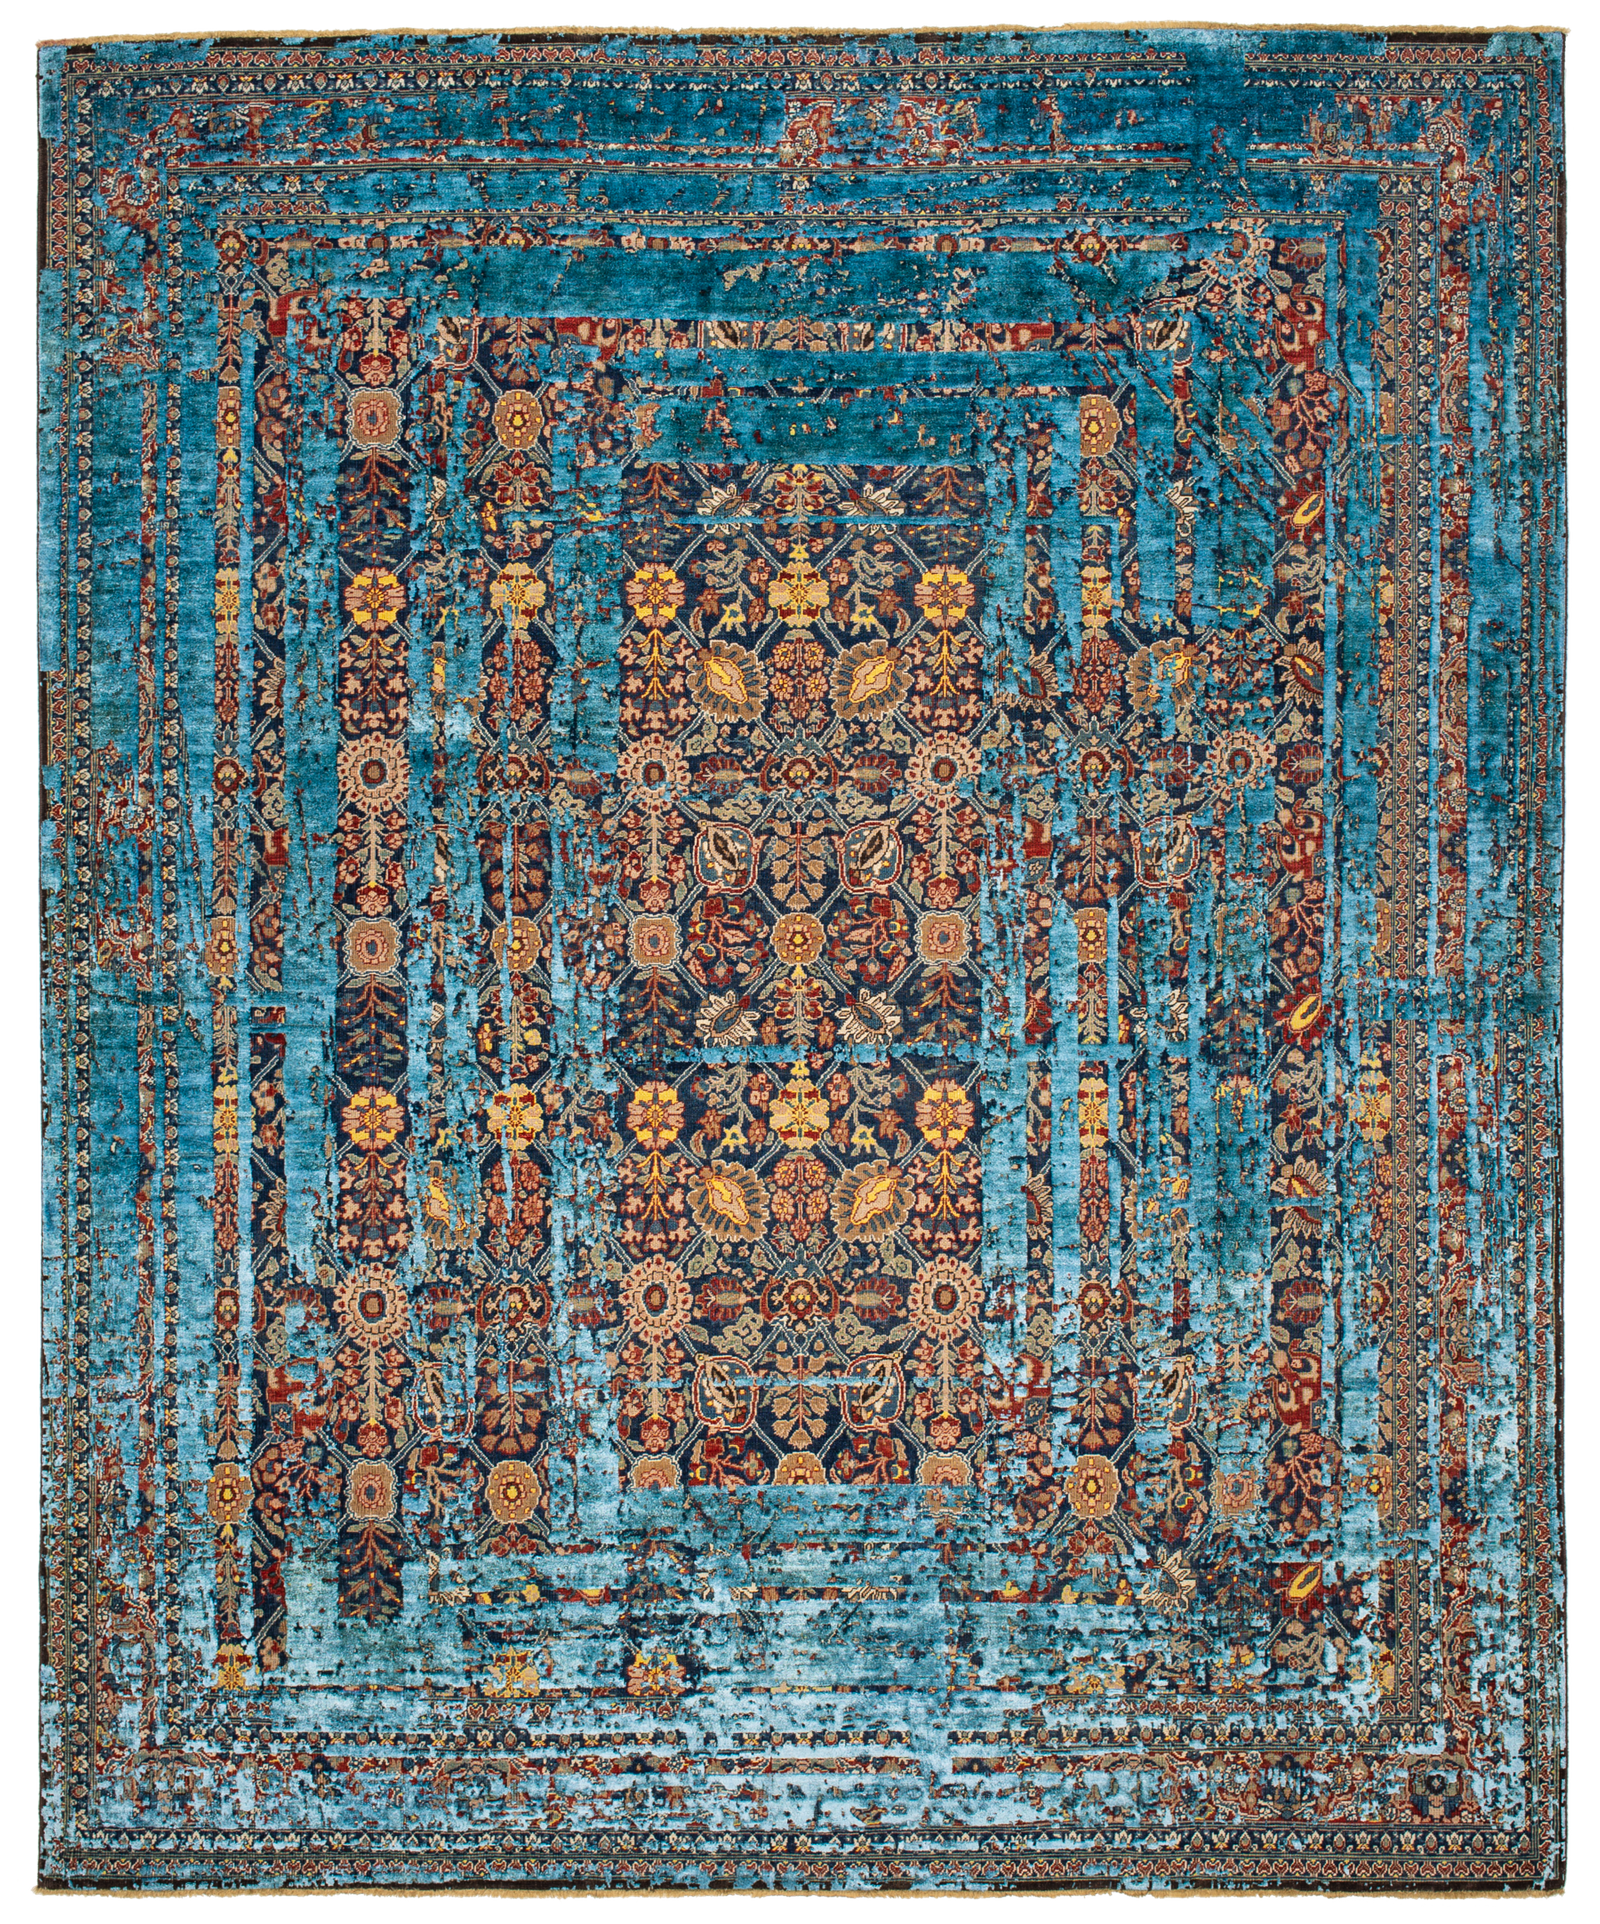 Heritage collection. Jan Kath. Ковры Julian collection. Jan Kath Carpets. Ковер Tabriz canal Stomped от Jan Kath в современном Восточном стиле.